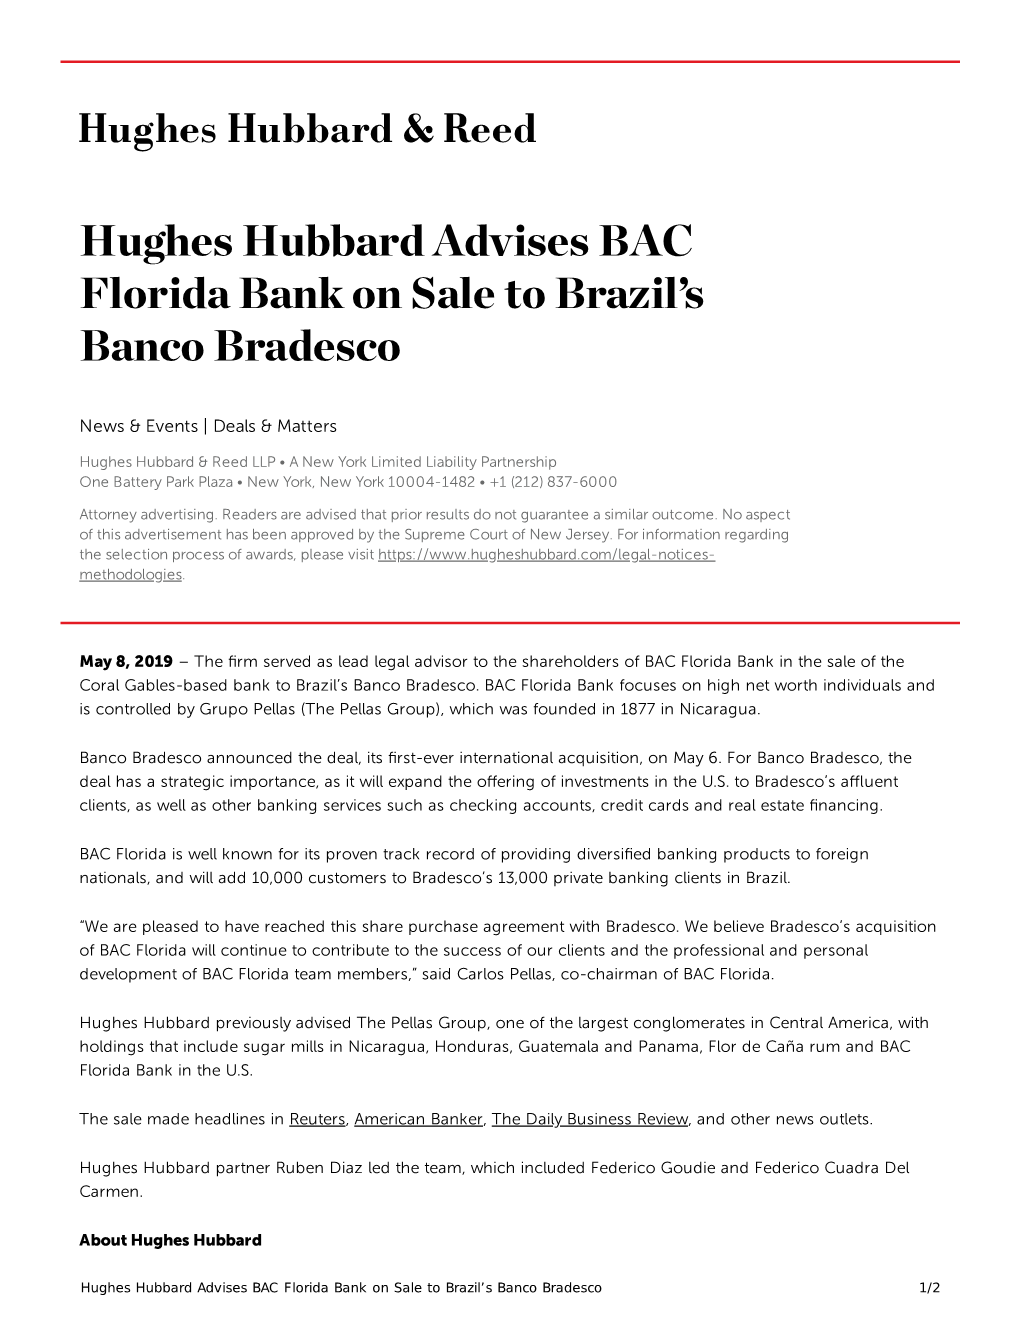 Hughes Hubbard Advises BAC Florida Bank on Sale to Brazil's Banco